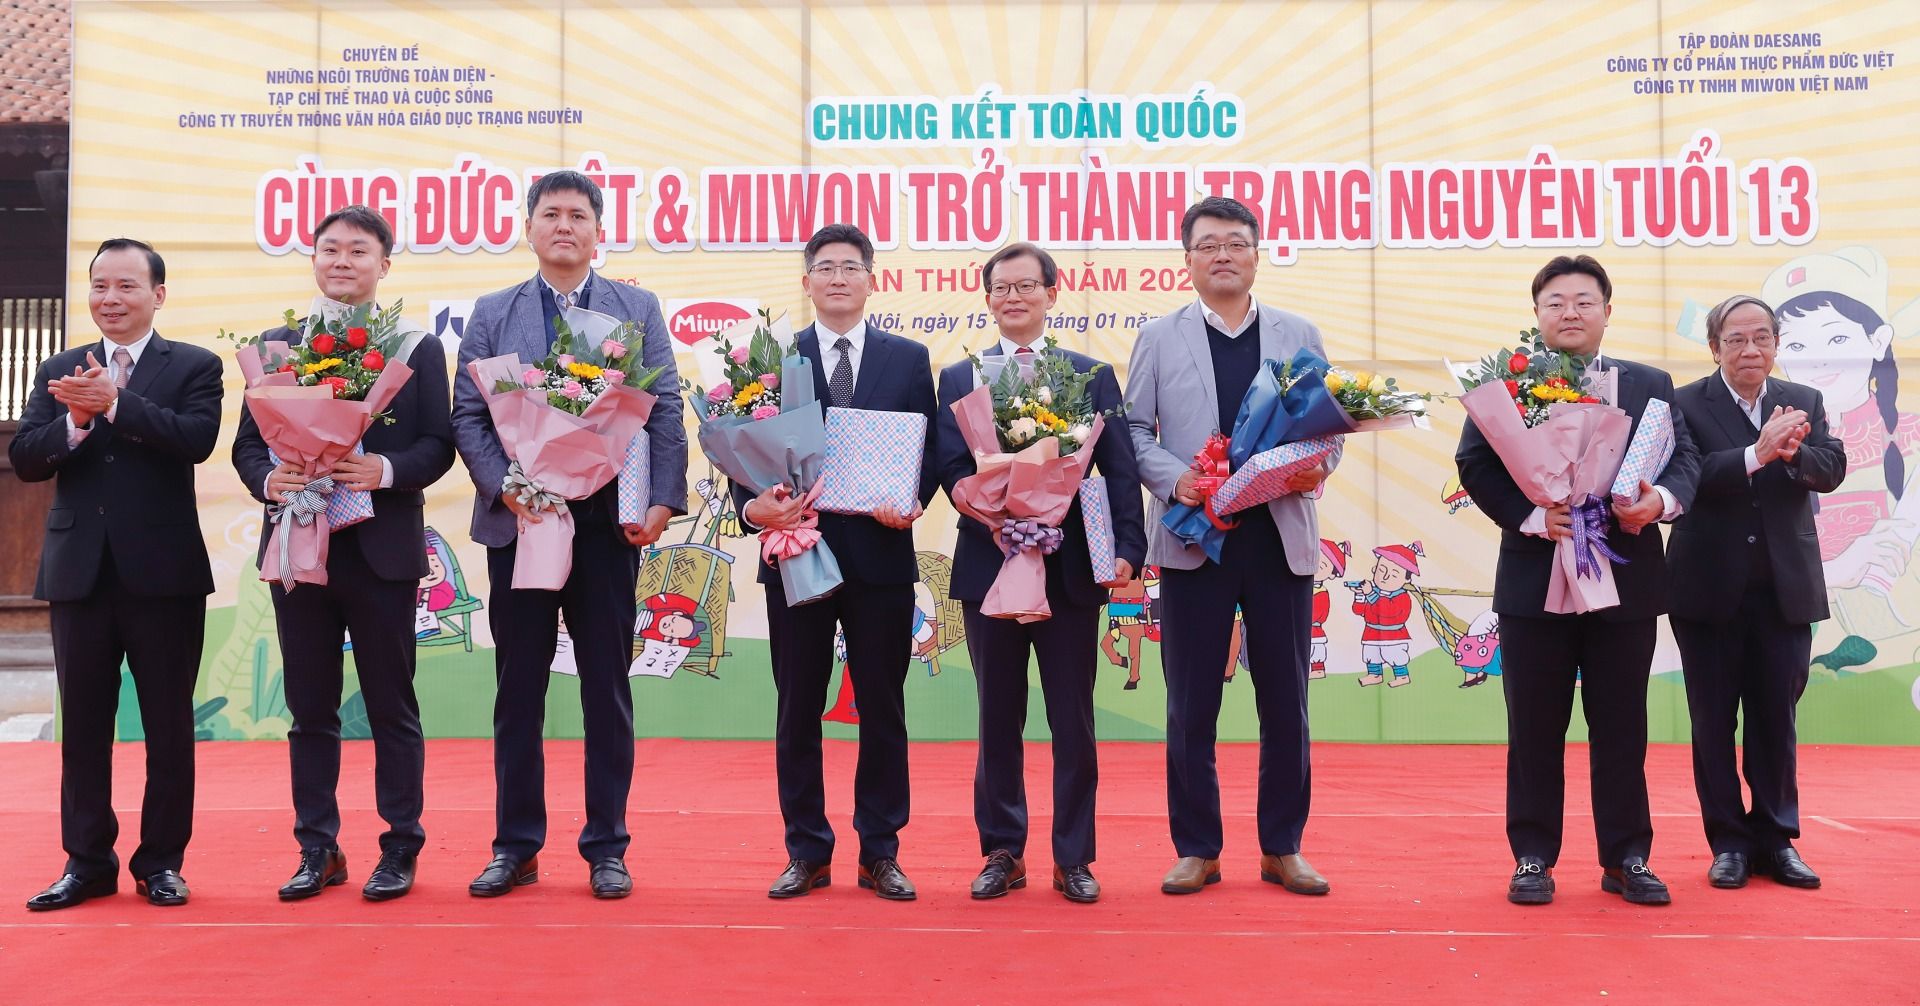 Chung kết toàn quốc cuộc thi “Cùng Đức Việt & Miwon trở thành Trạng nguyên tuổi 13” - lần thứ VI năm 2020: Tôn vinh truyền thống hiếu học và nhân văn